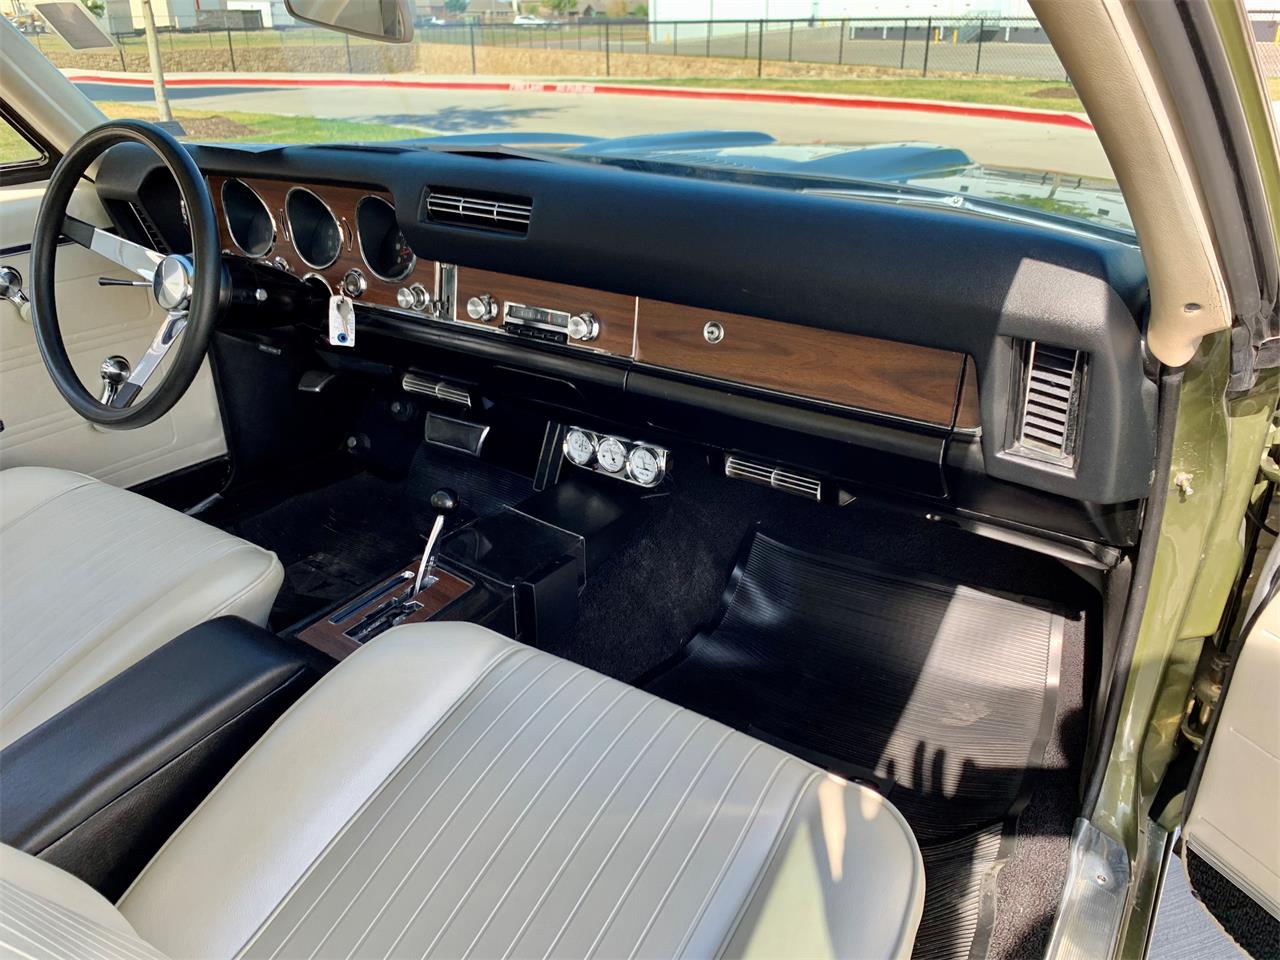 gto, escolha do dia: 1968 Pontiac GTO, ClassicCars.com Journal